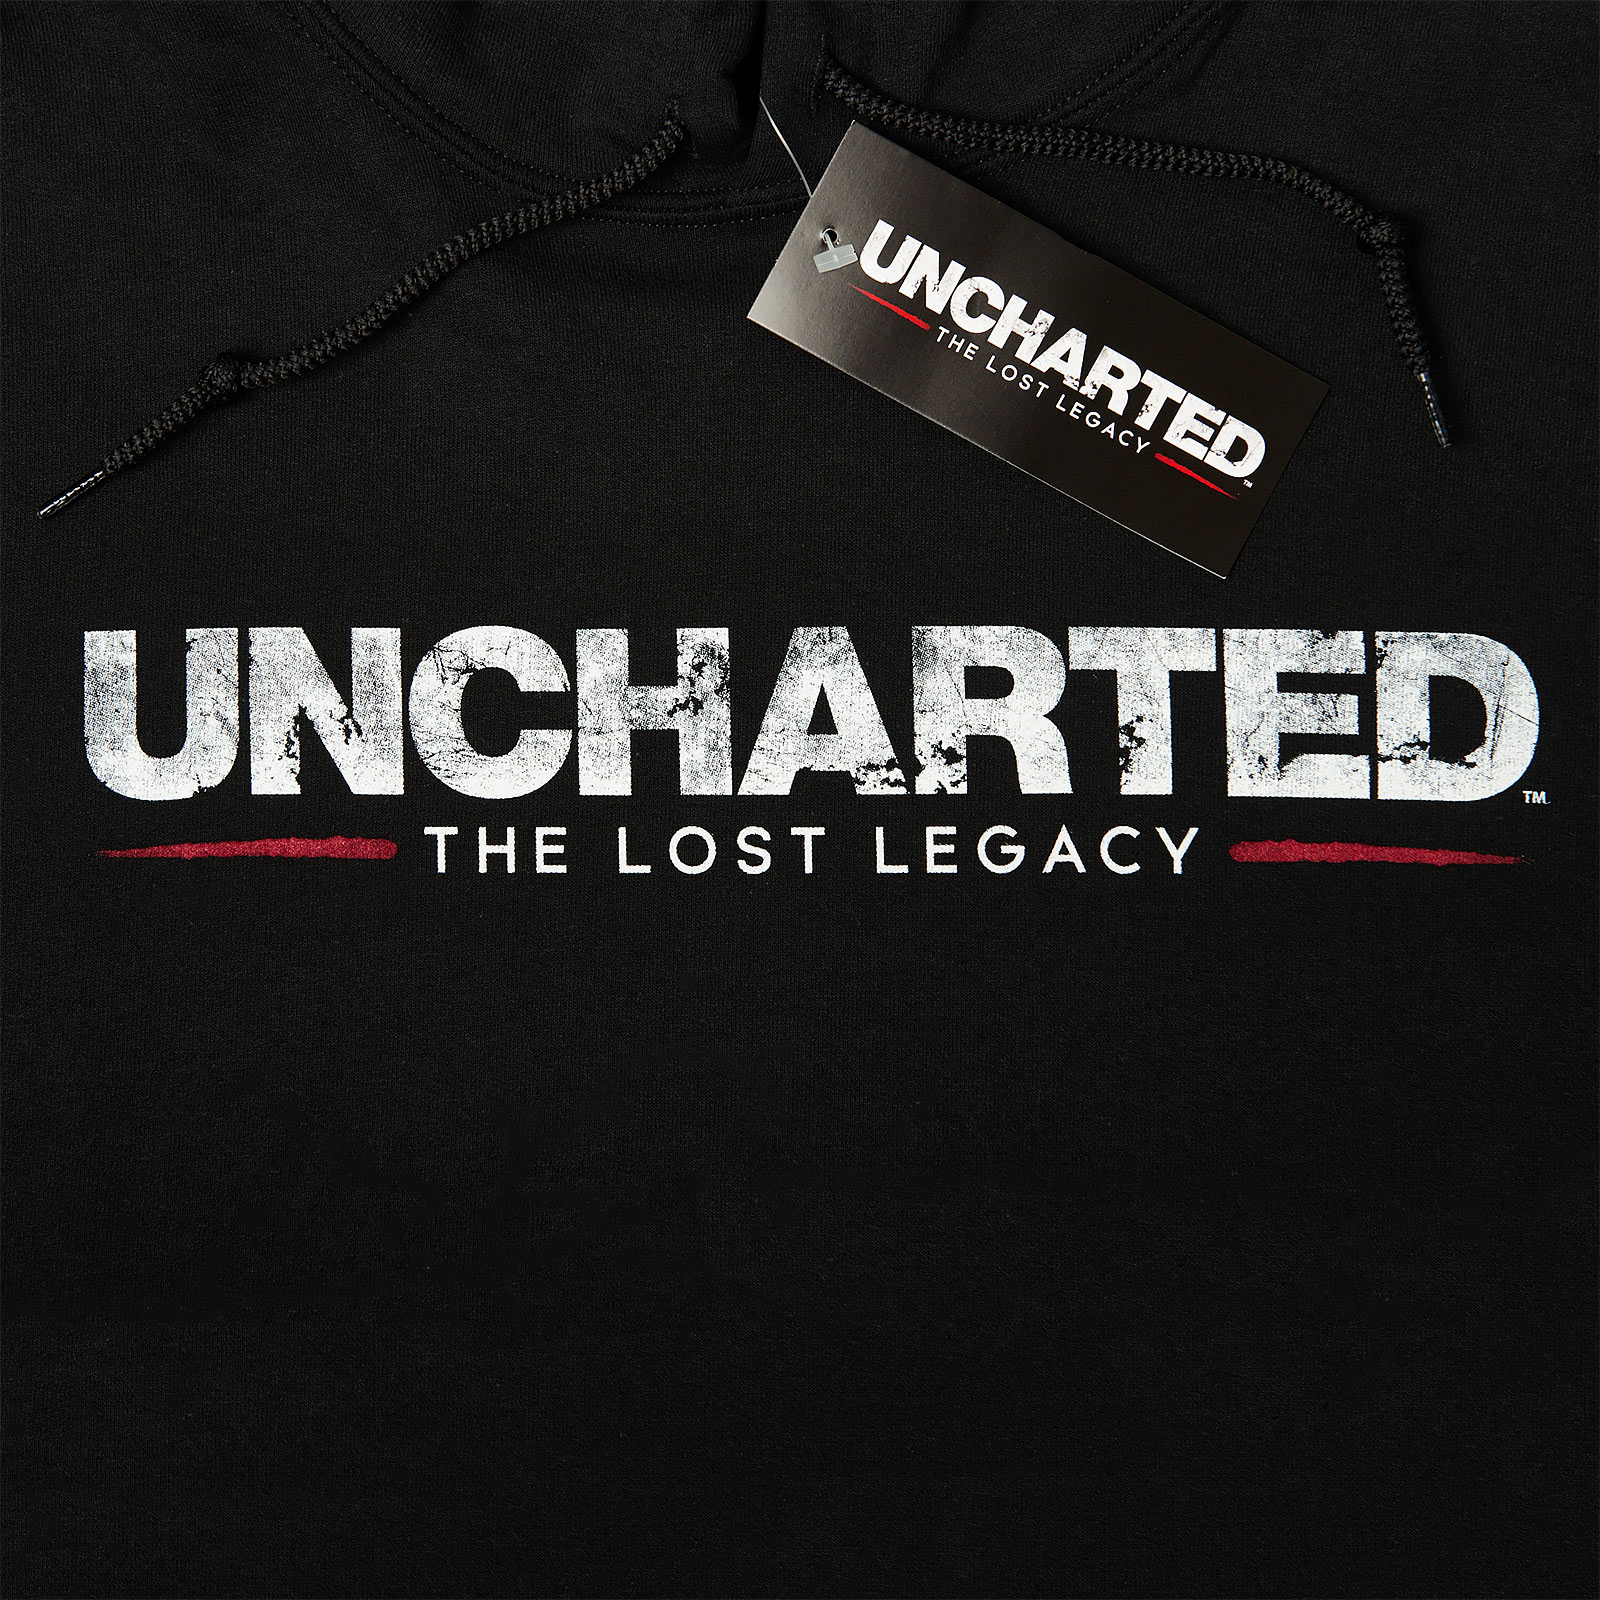 Uncharted - Sweat à capuche logo noir